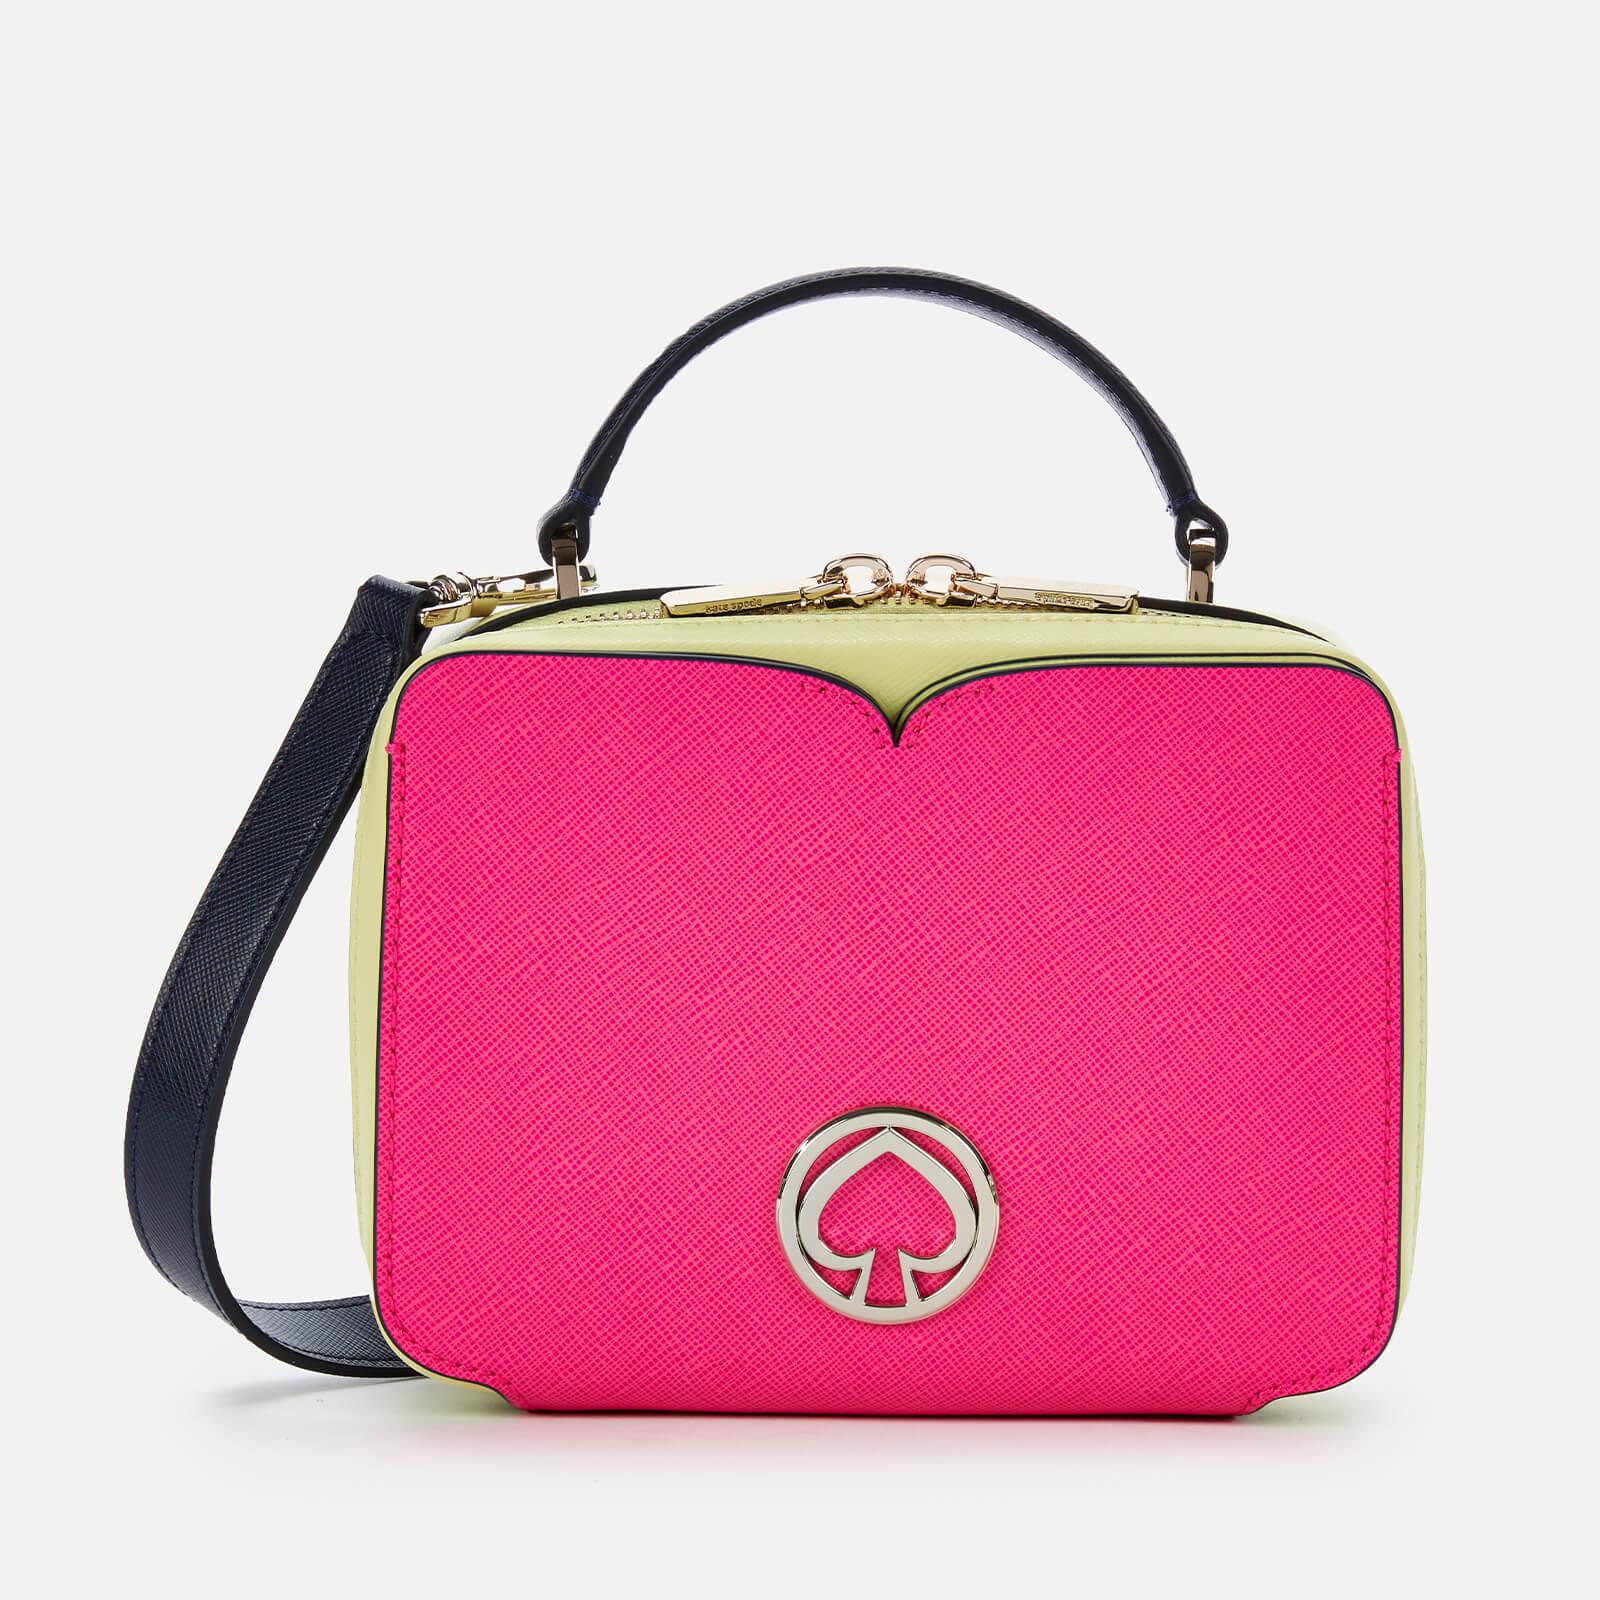 Kate Spade Leather Vanity Mini Top Handle Bag in Pink - Lyst